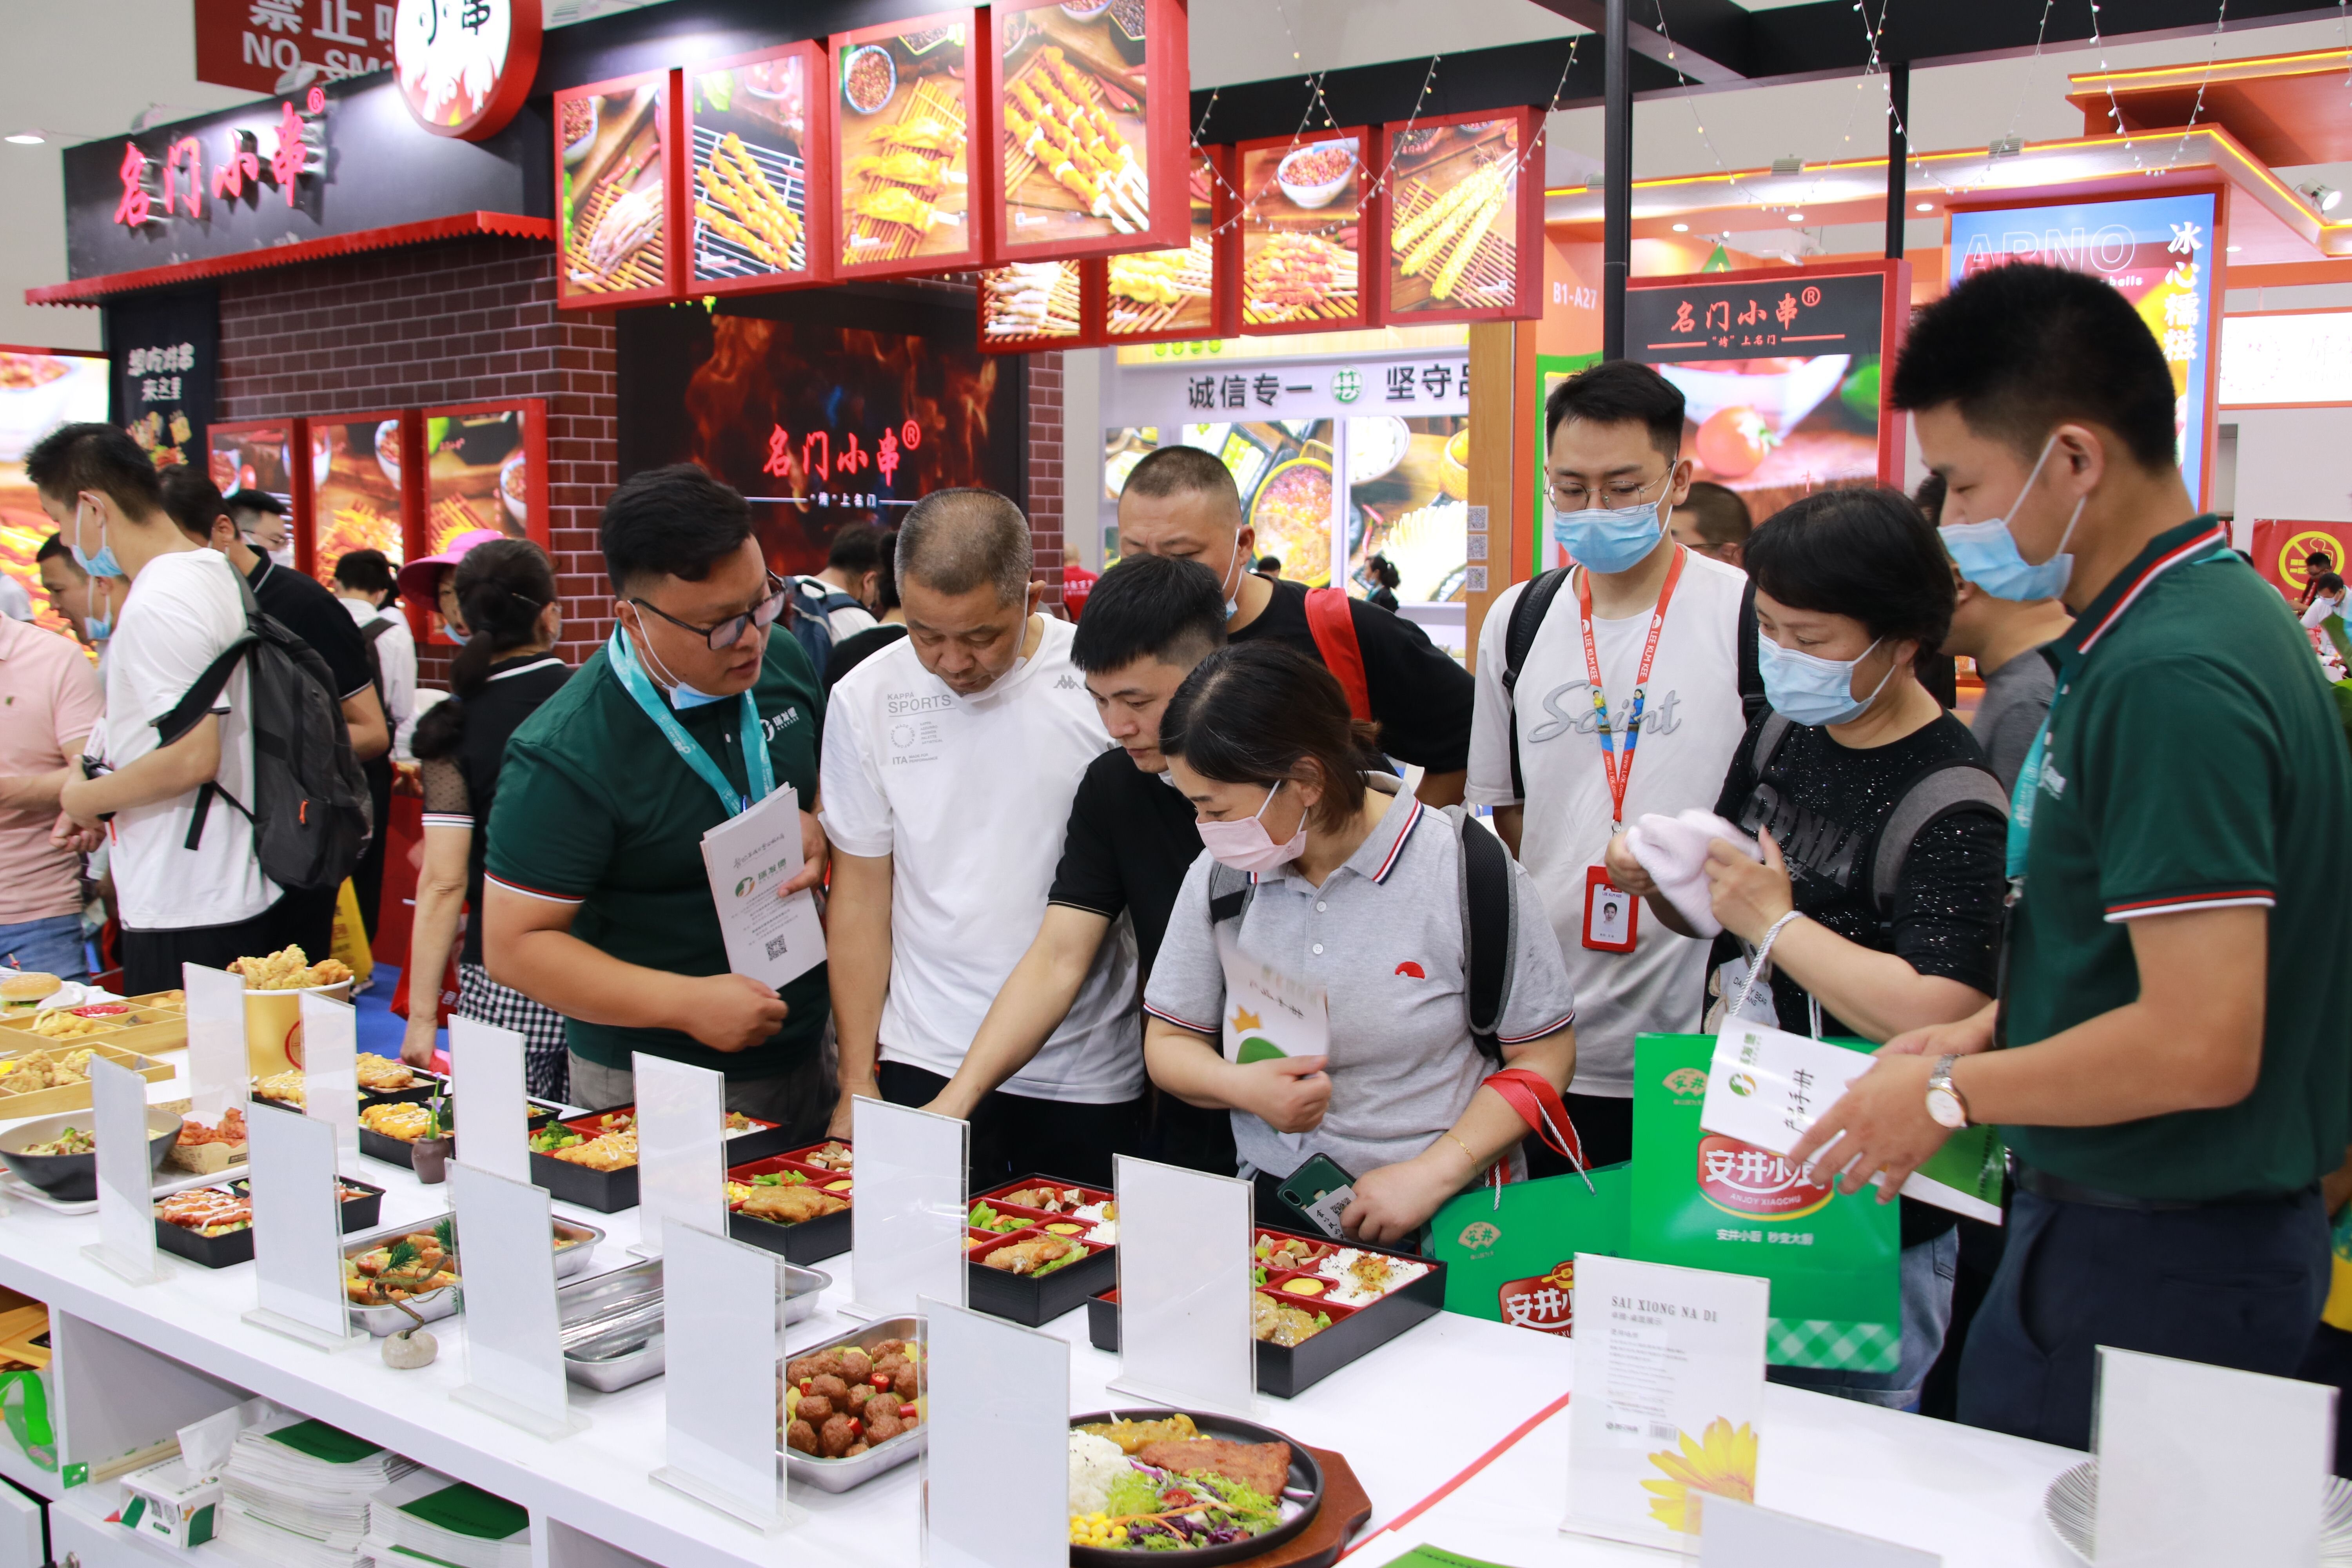 第十届中国食材电商节在武汉国博盛大开幕预制菜龙头老大安井食品火爆